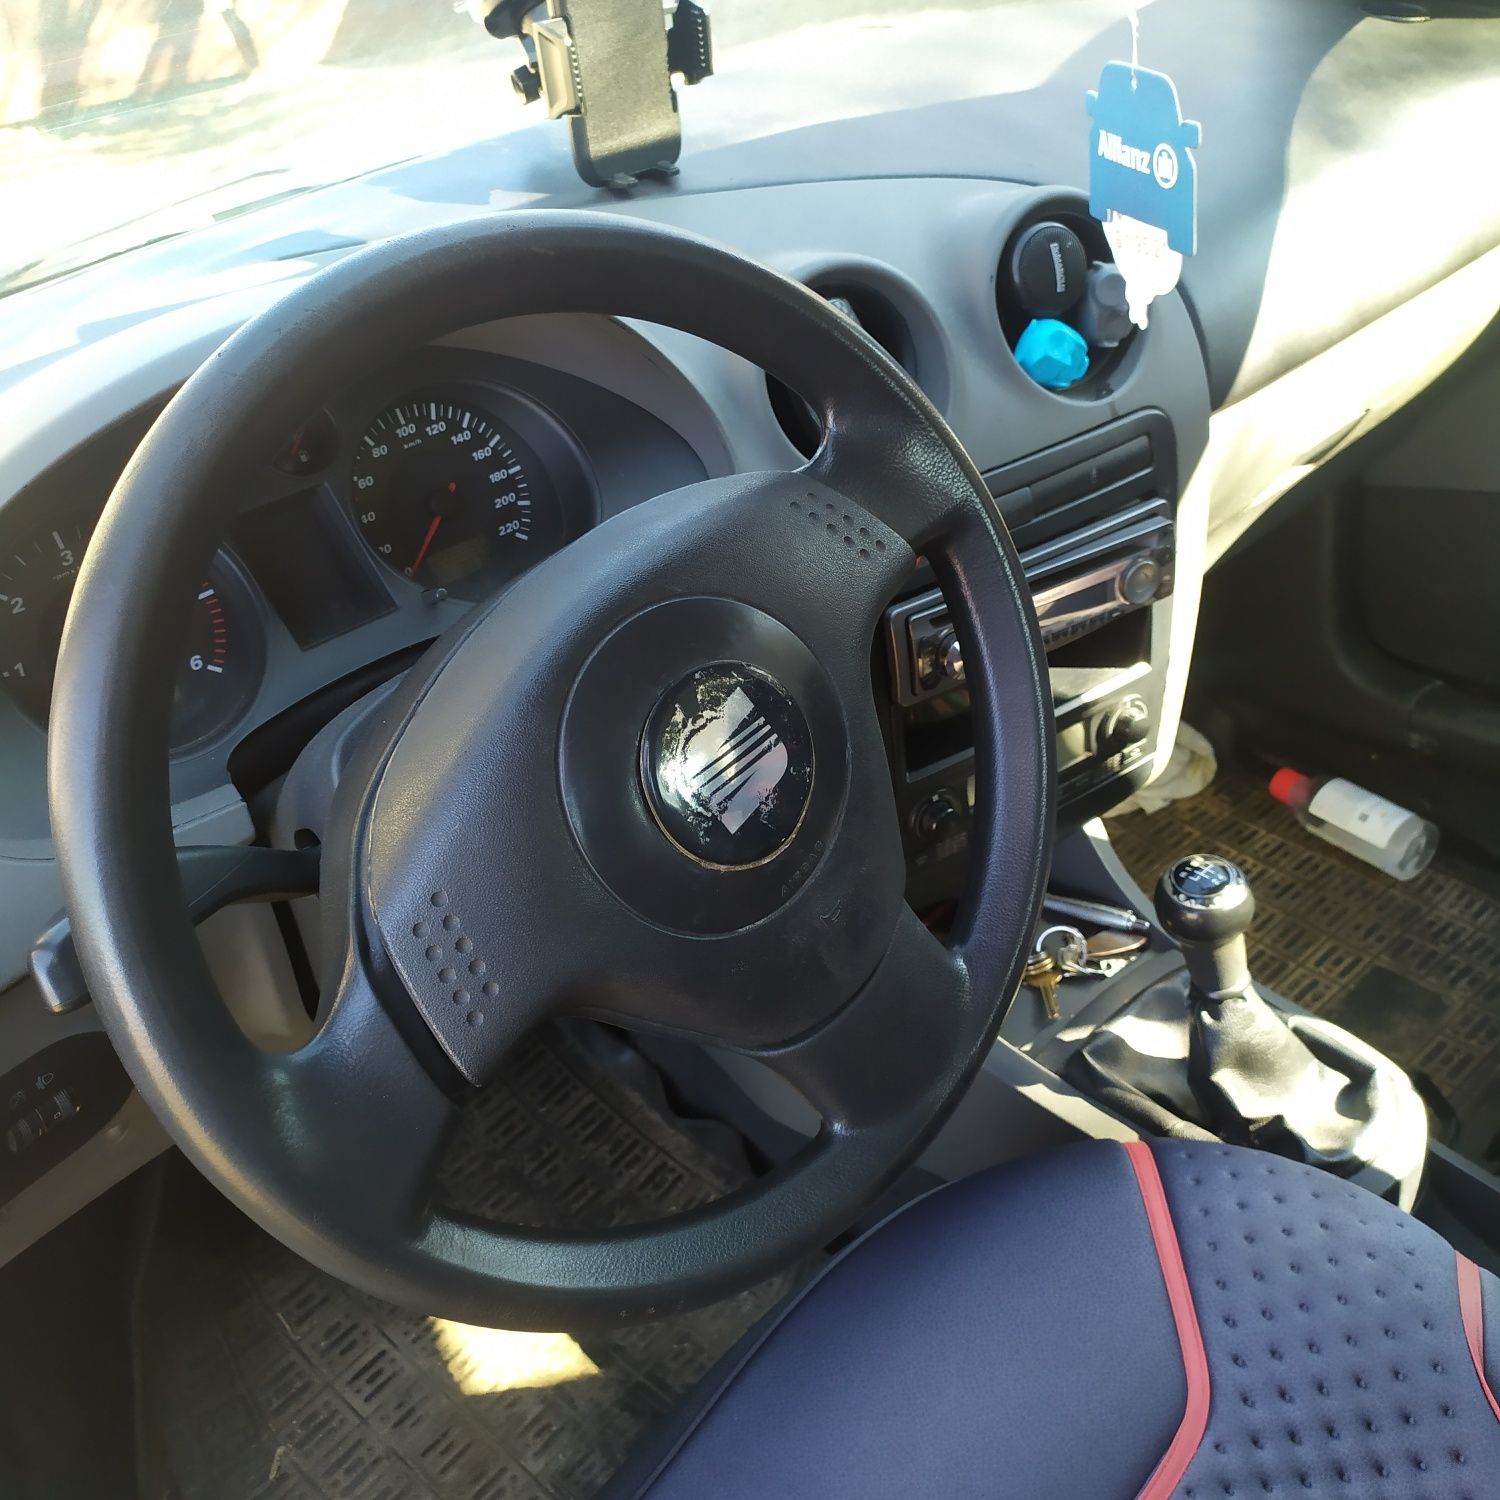 Seat Ibiza 1.9 TDI